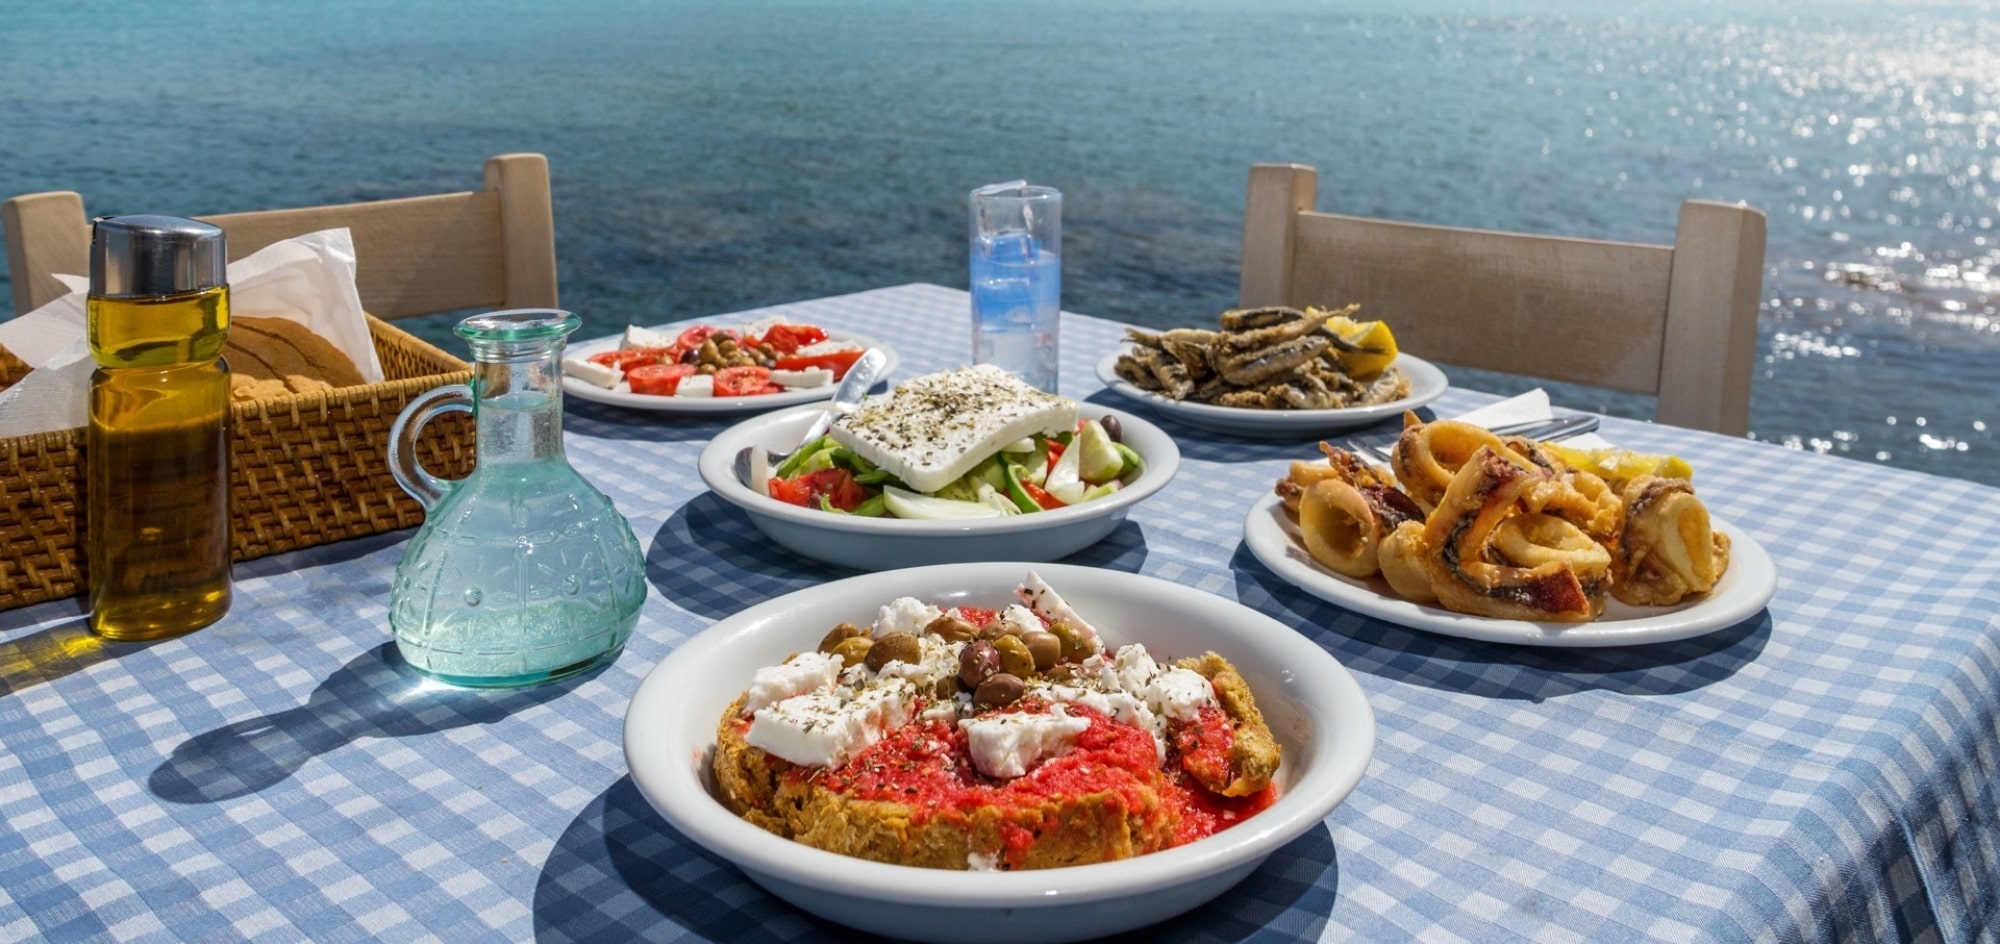 “When in Greece, eat like a Greek”